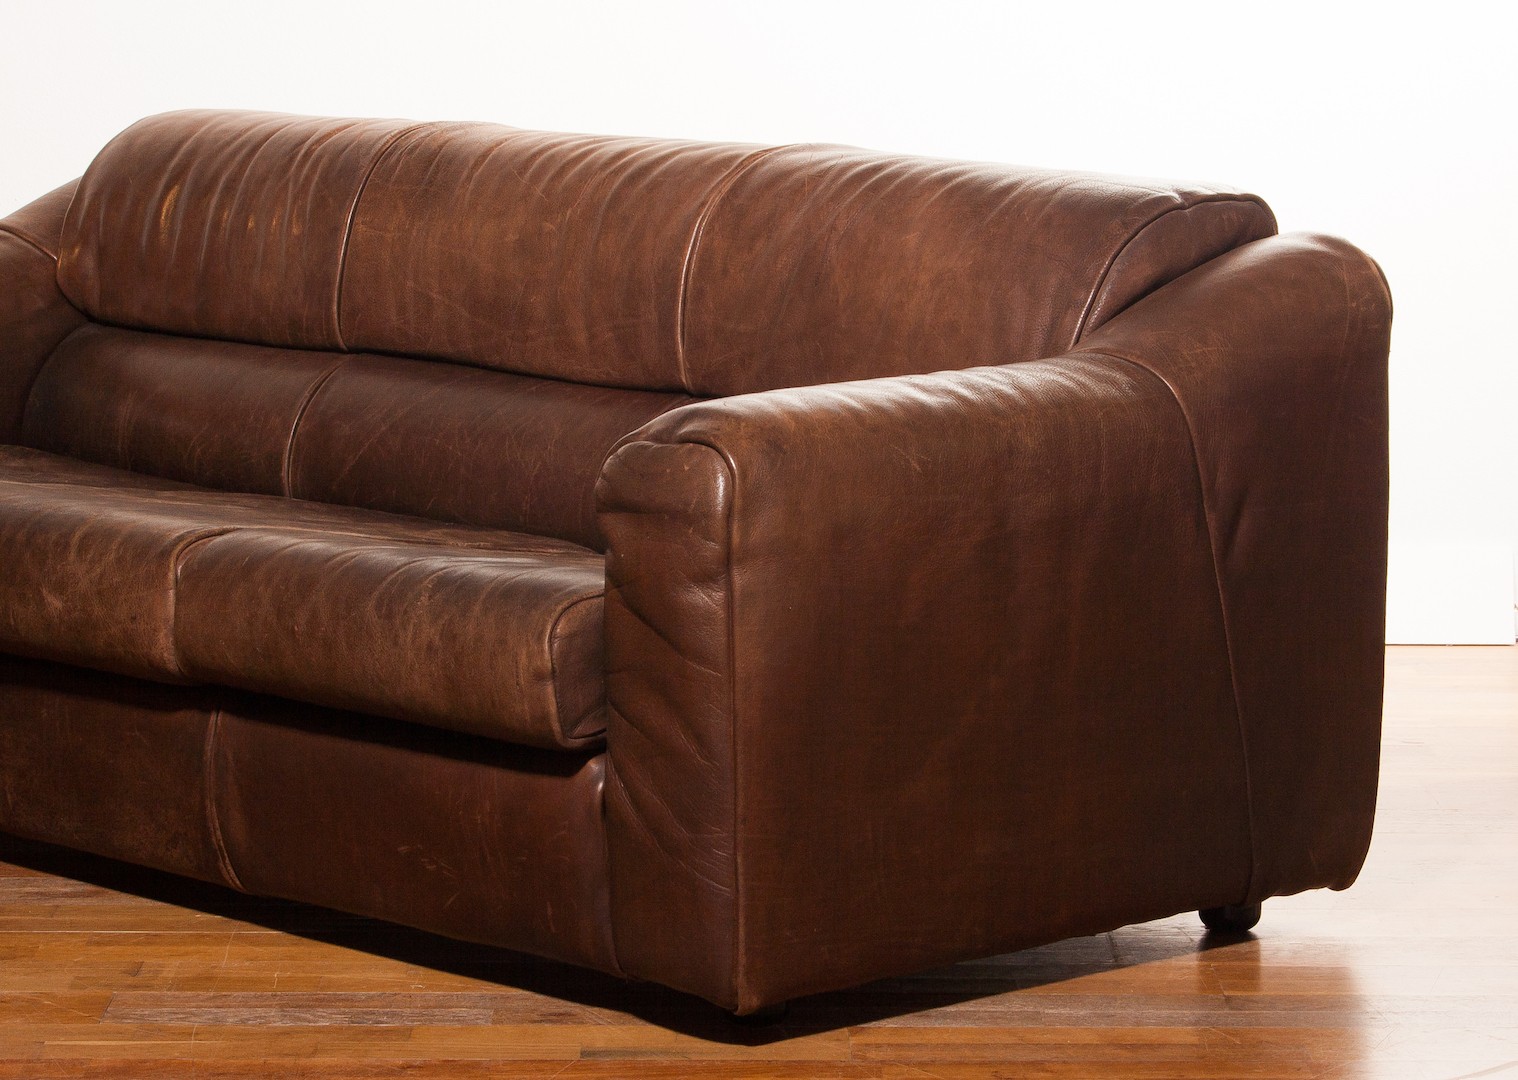 buffalo leather sofa cleaner